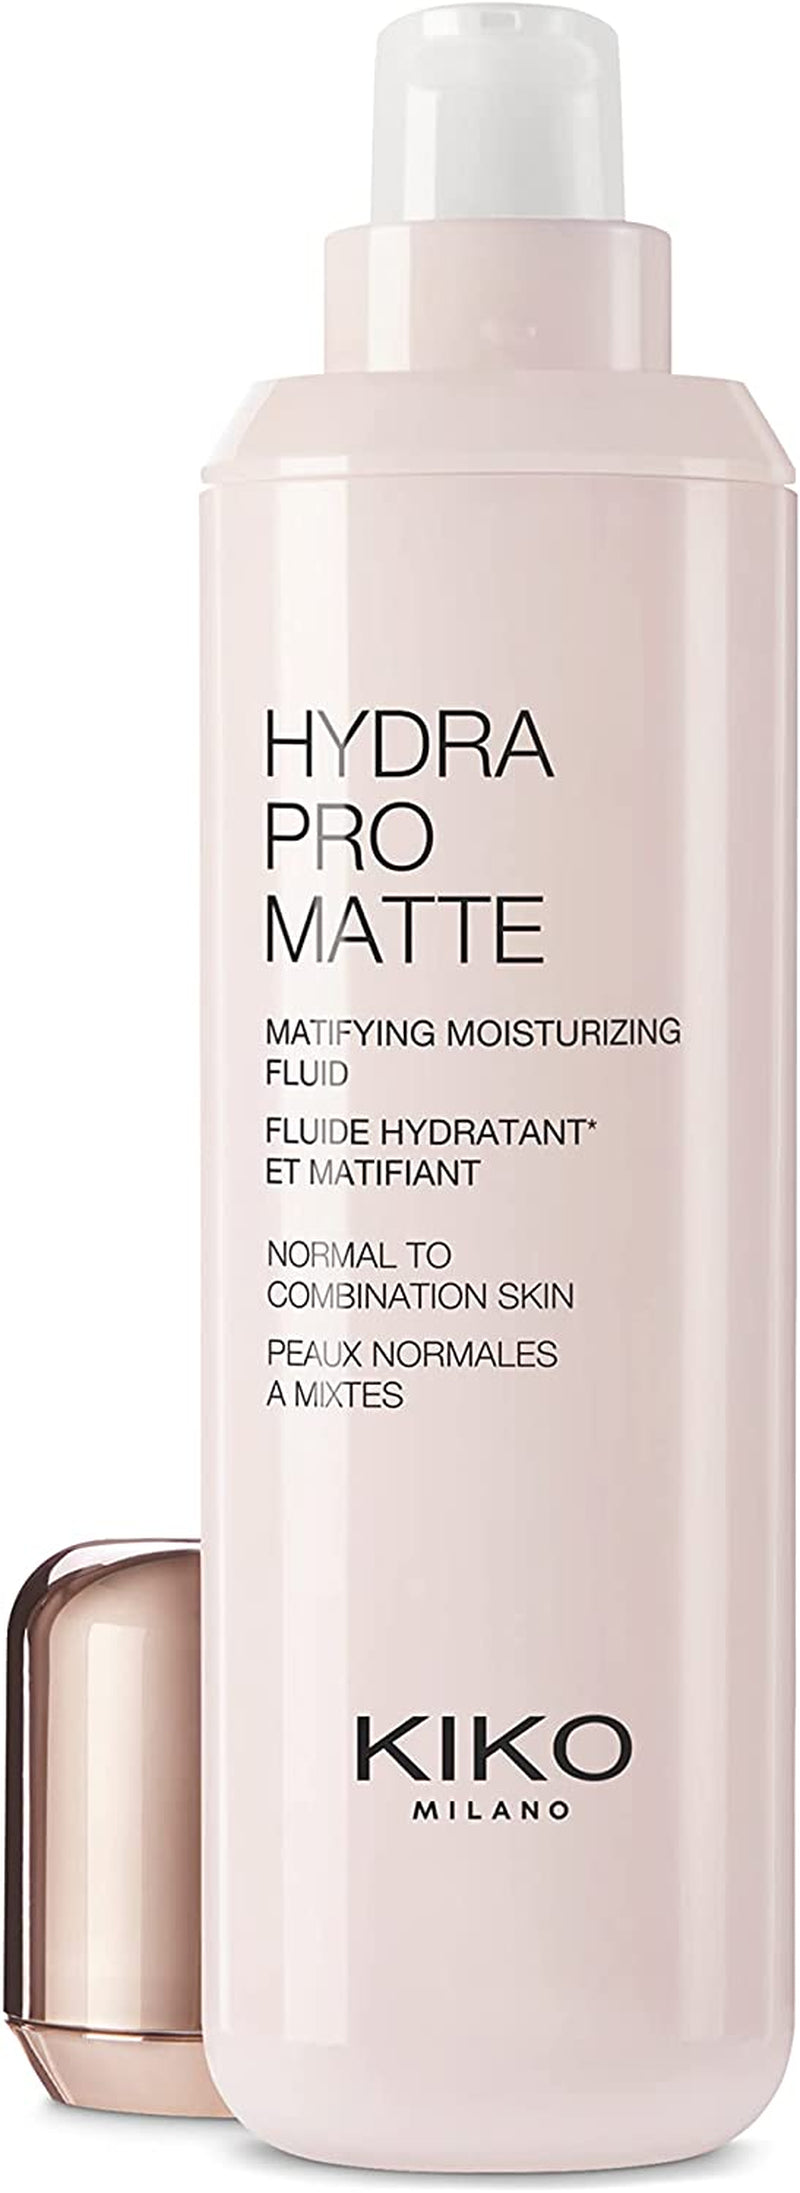 KIKO Milano Hydra Pro Matte | Mattifying Mosturizing Fluid